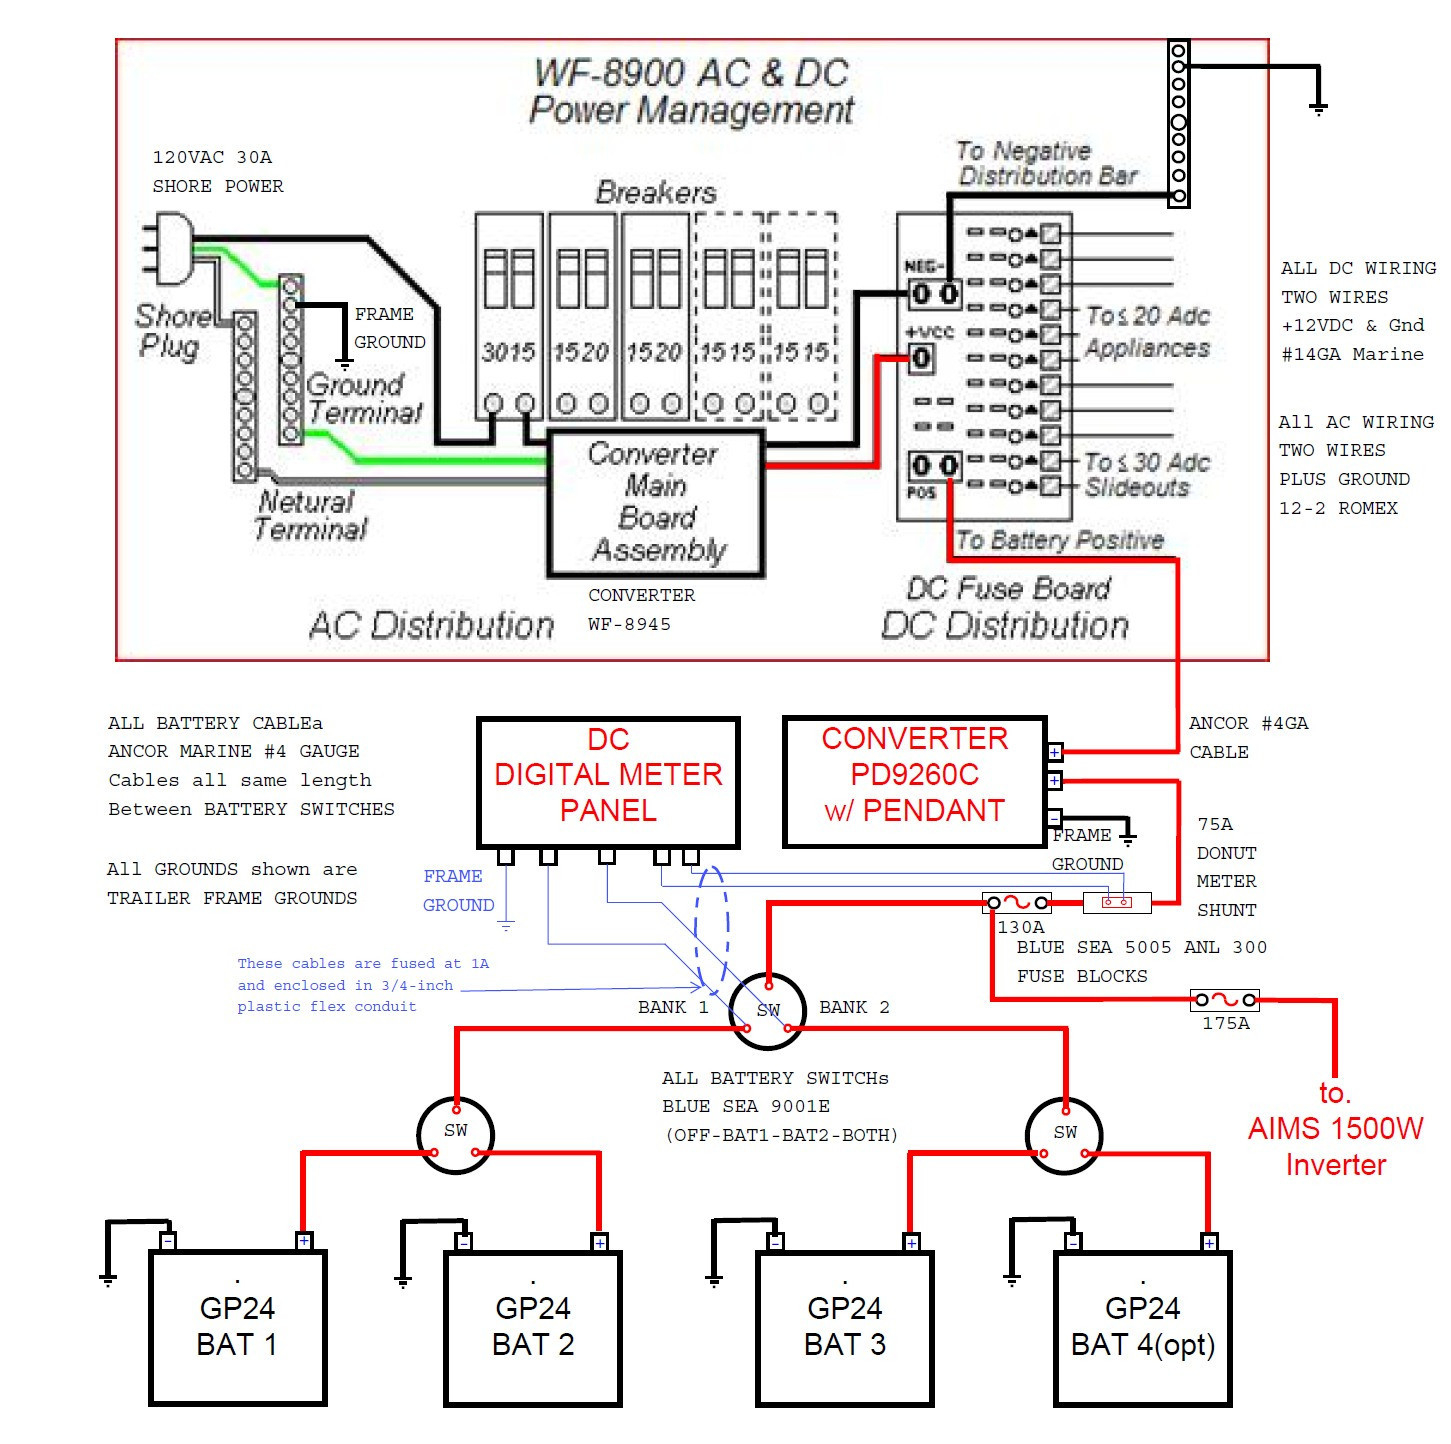 30A 250V Plug Wiring Diagram Free Downloads 30A 250V Plug Wiring - 20A 250V Plug Wiring Diagram